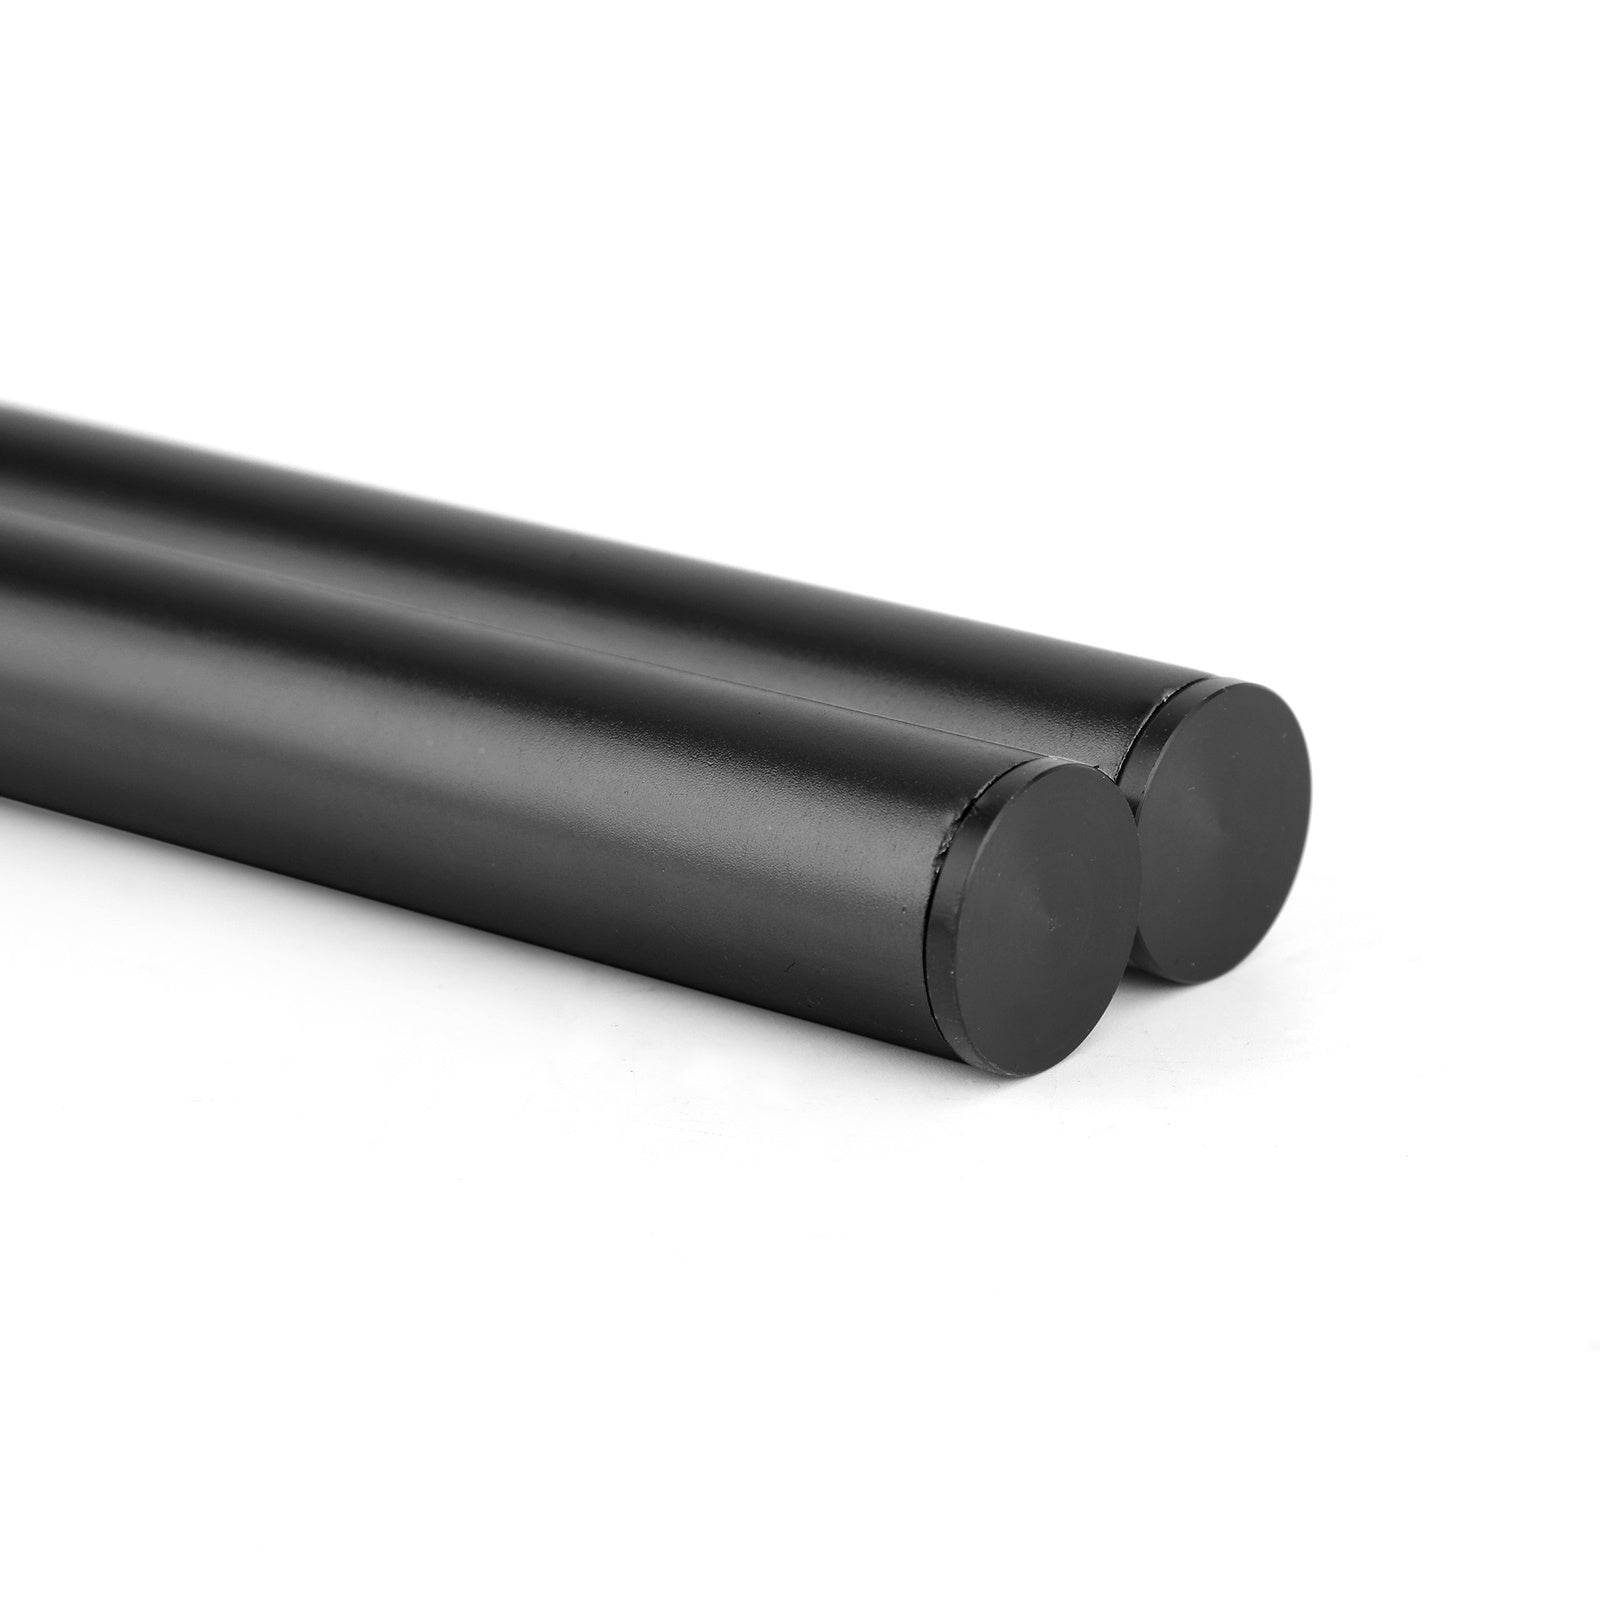 Kit manubrio tubo forcella universale regolabile girevole in billet CNC da 45 mm